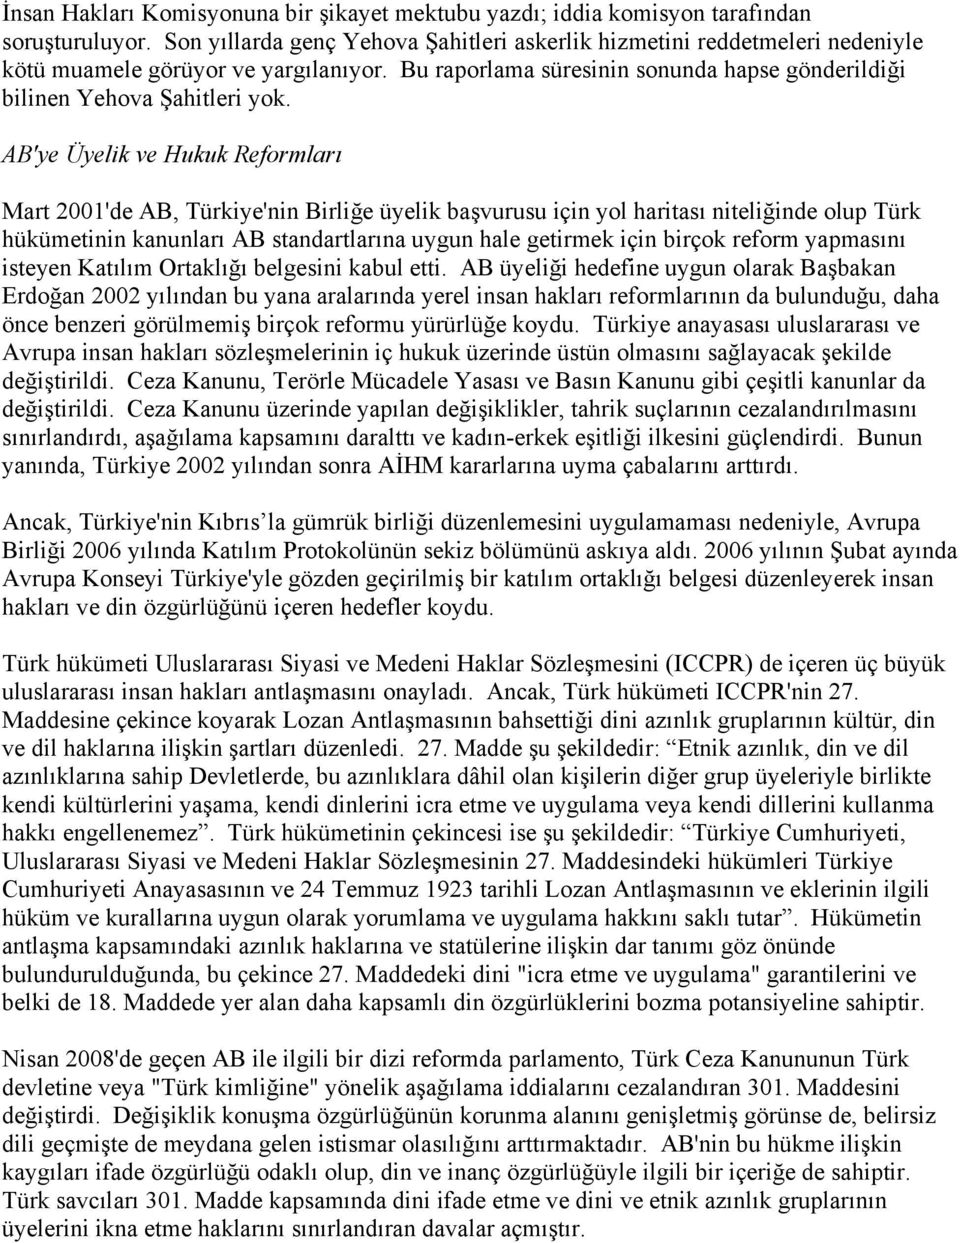 AB'ye Üyelik ve Hukuk Reformları Mart 2001'de AB, Türkiye'nin Birliğe üyelik başvurusu için yol haritası niteliğinde olup Türk hükümetinin kanunları AB standartlarına uygun hale getirmek için birçok